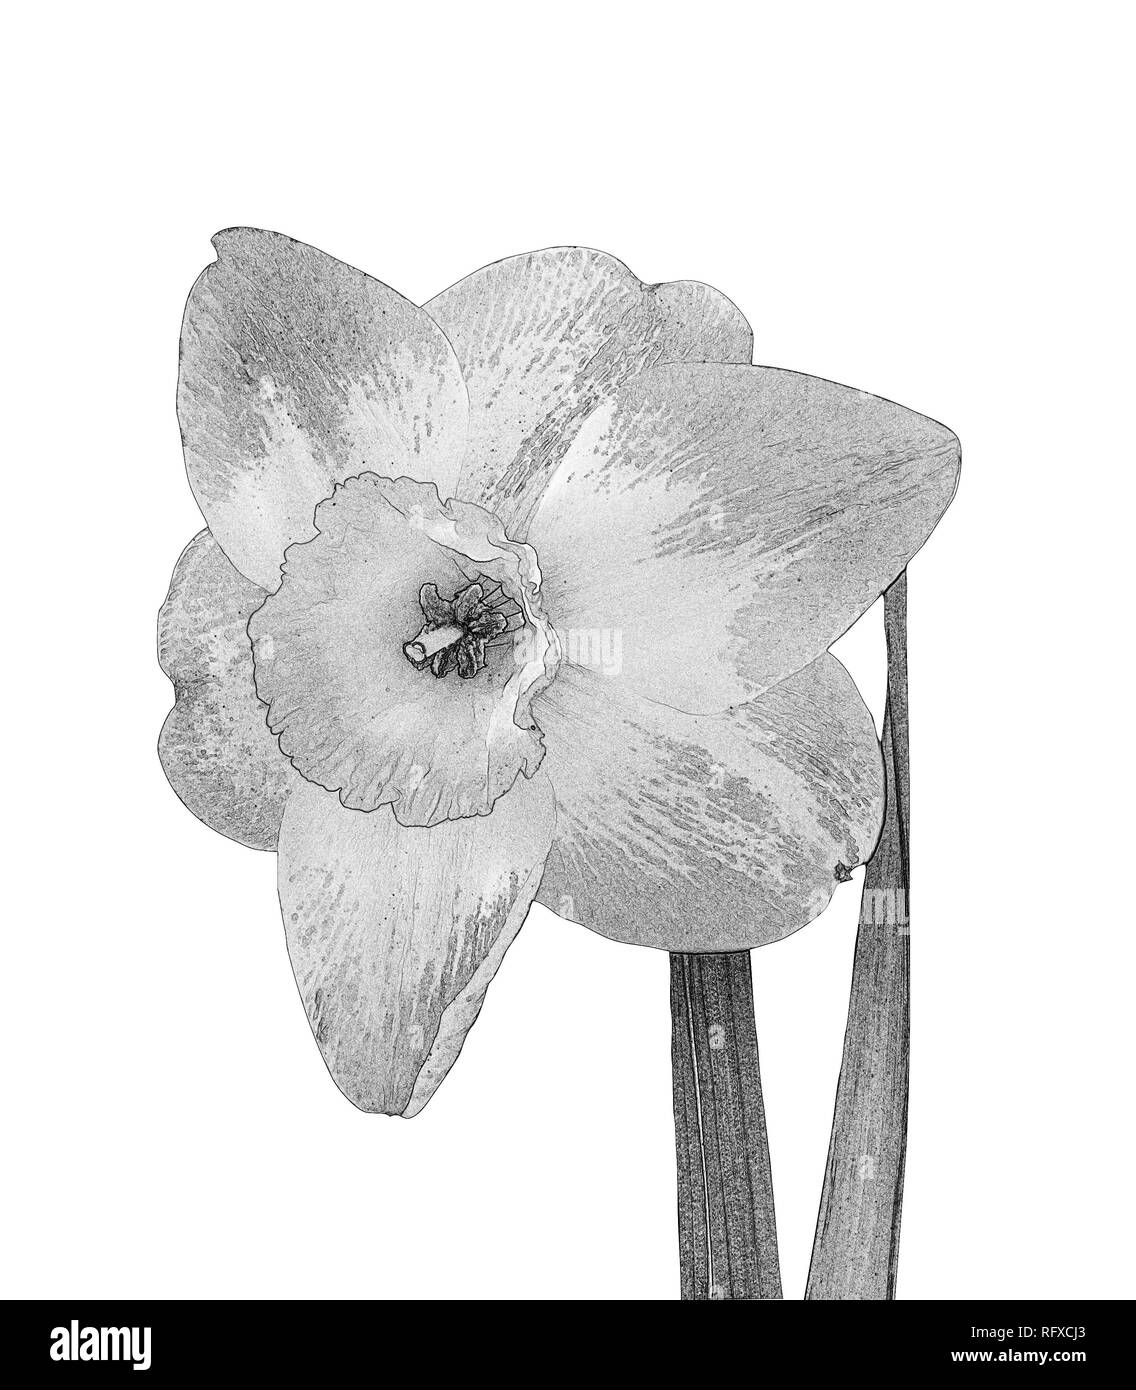 Fiore di narciso in bianco e nero isolato su uno sfondo bianco Foto Stock